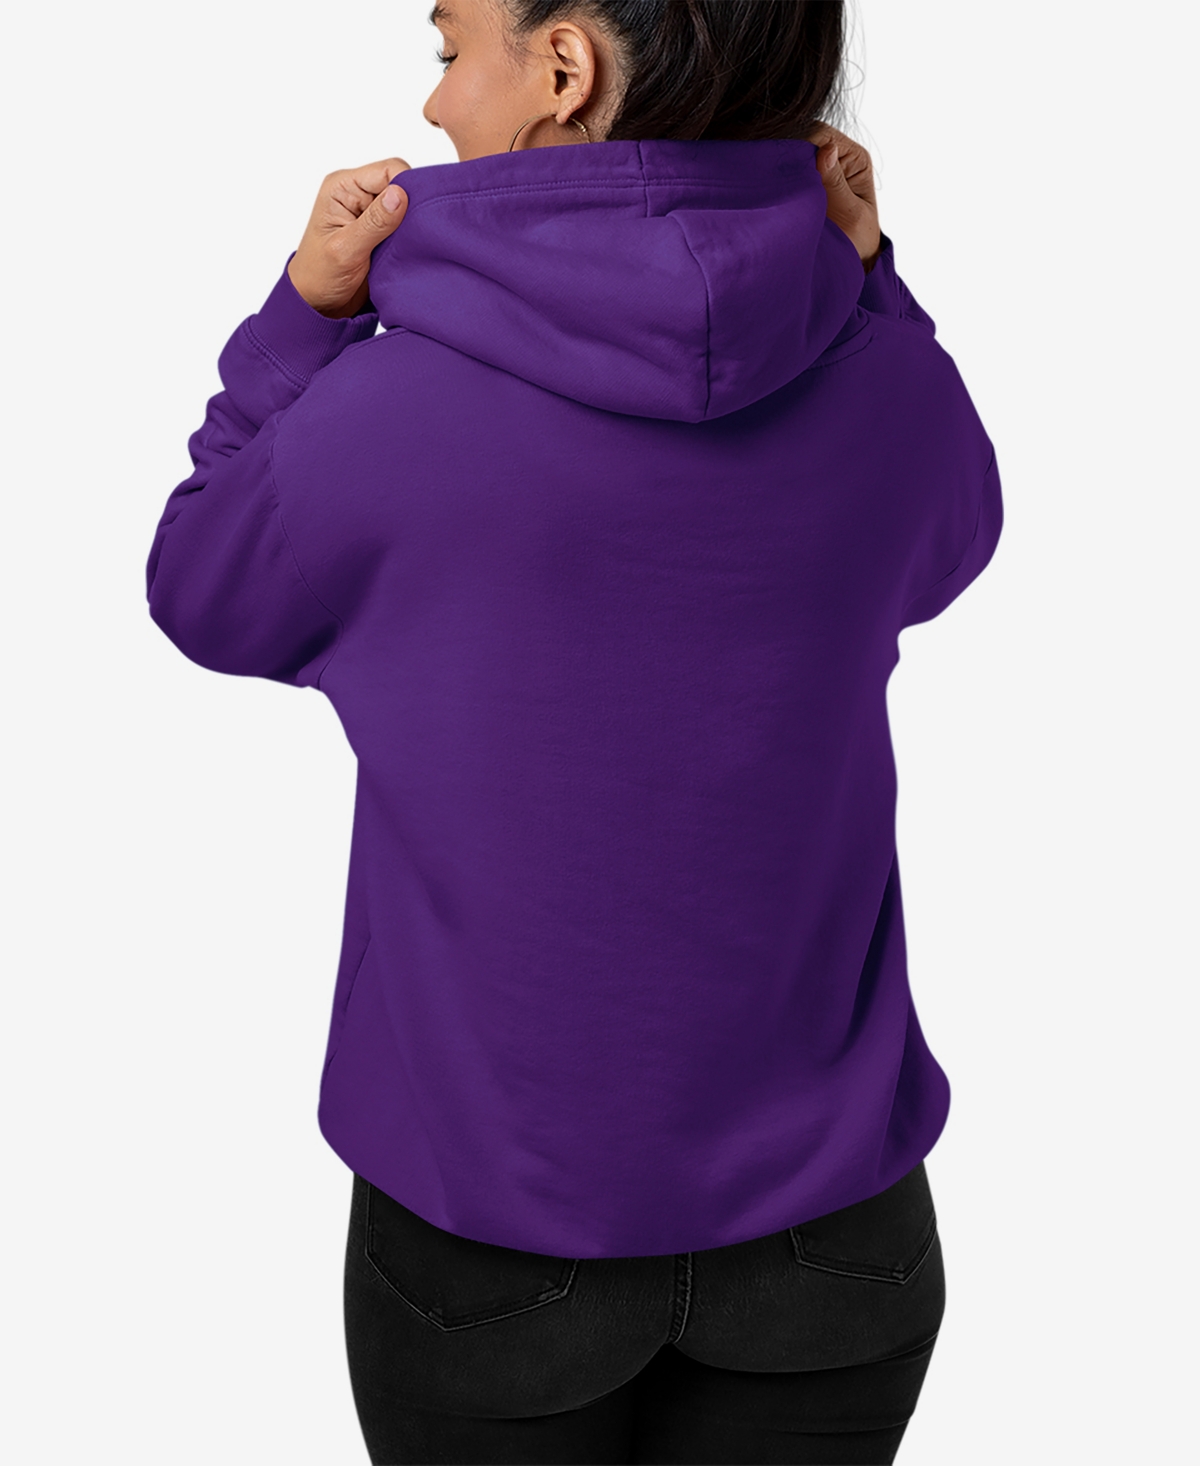 Shop La Pop Art Women's Word Art Usa Fireworks Hooded Sweatshirt In Purple